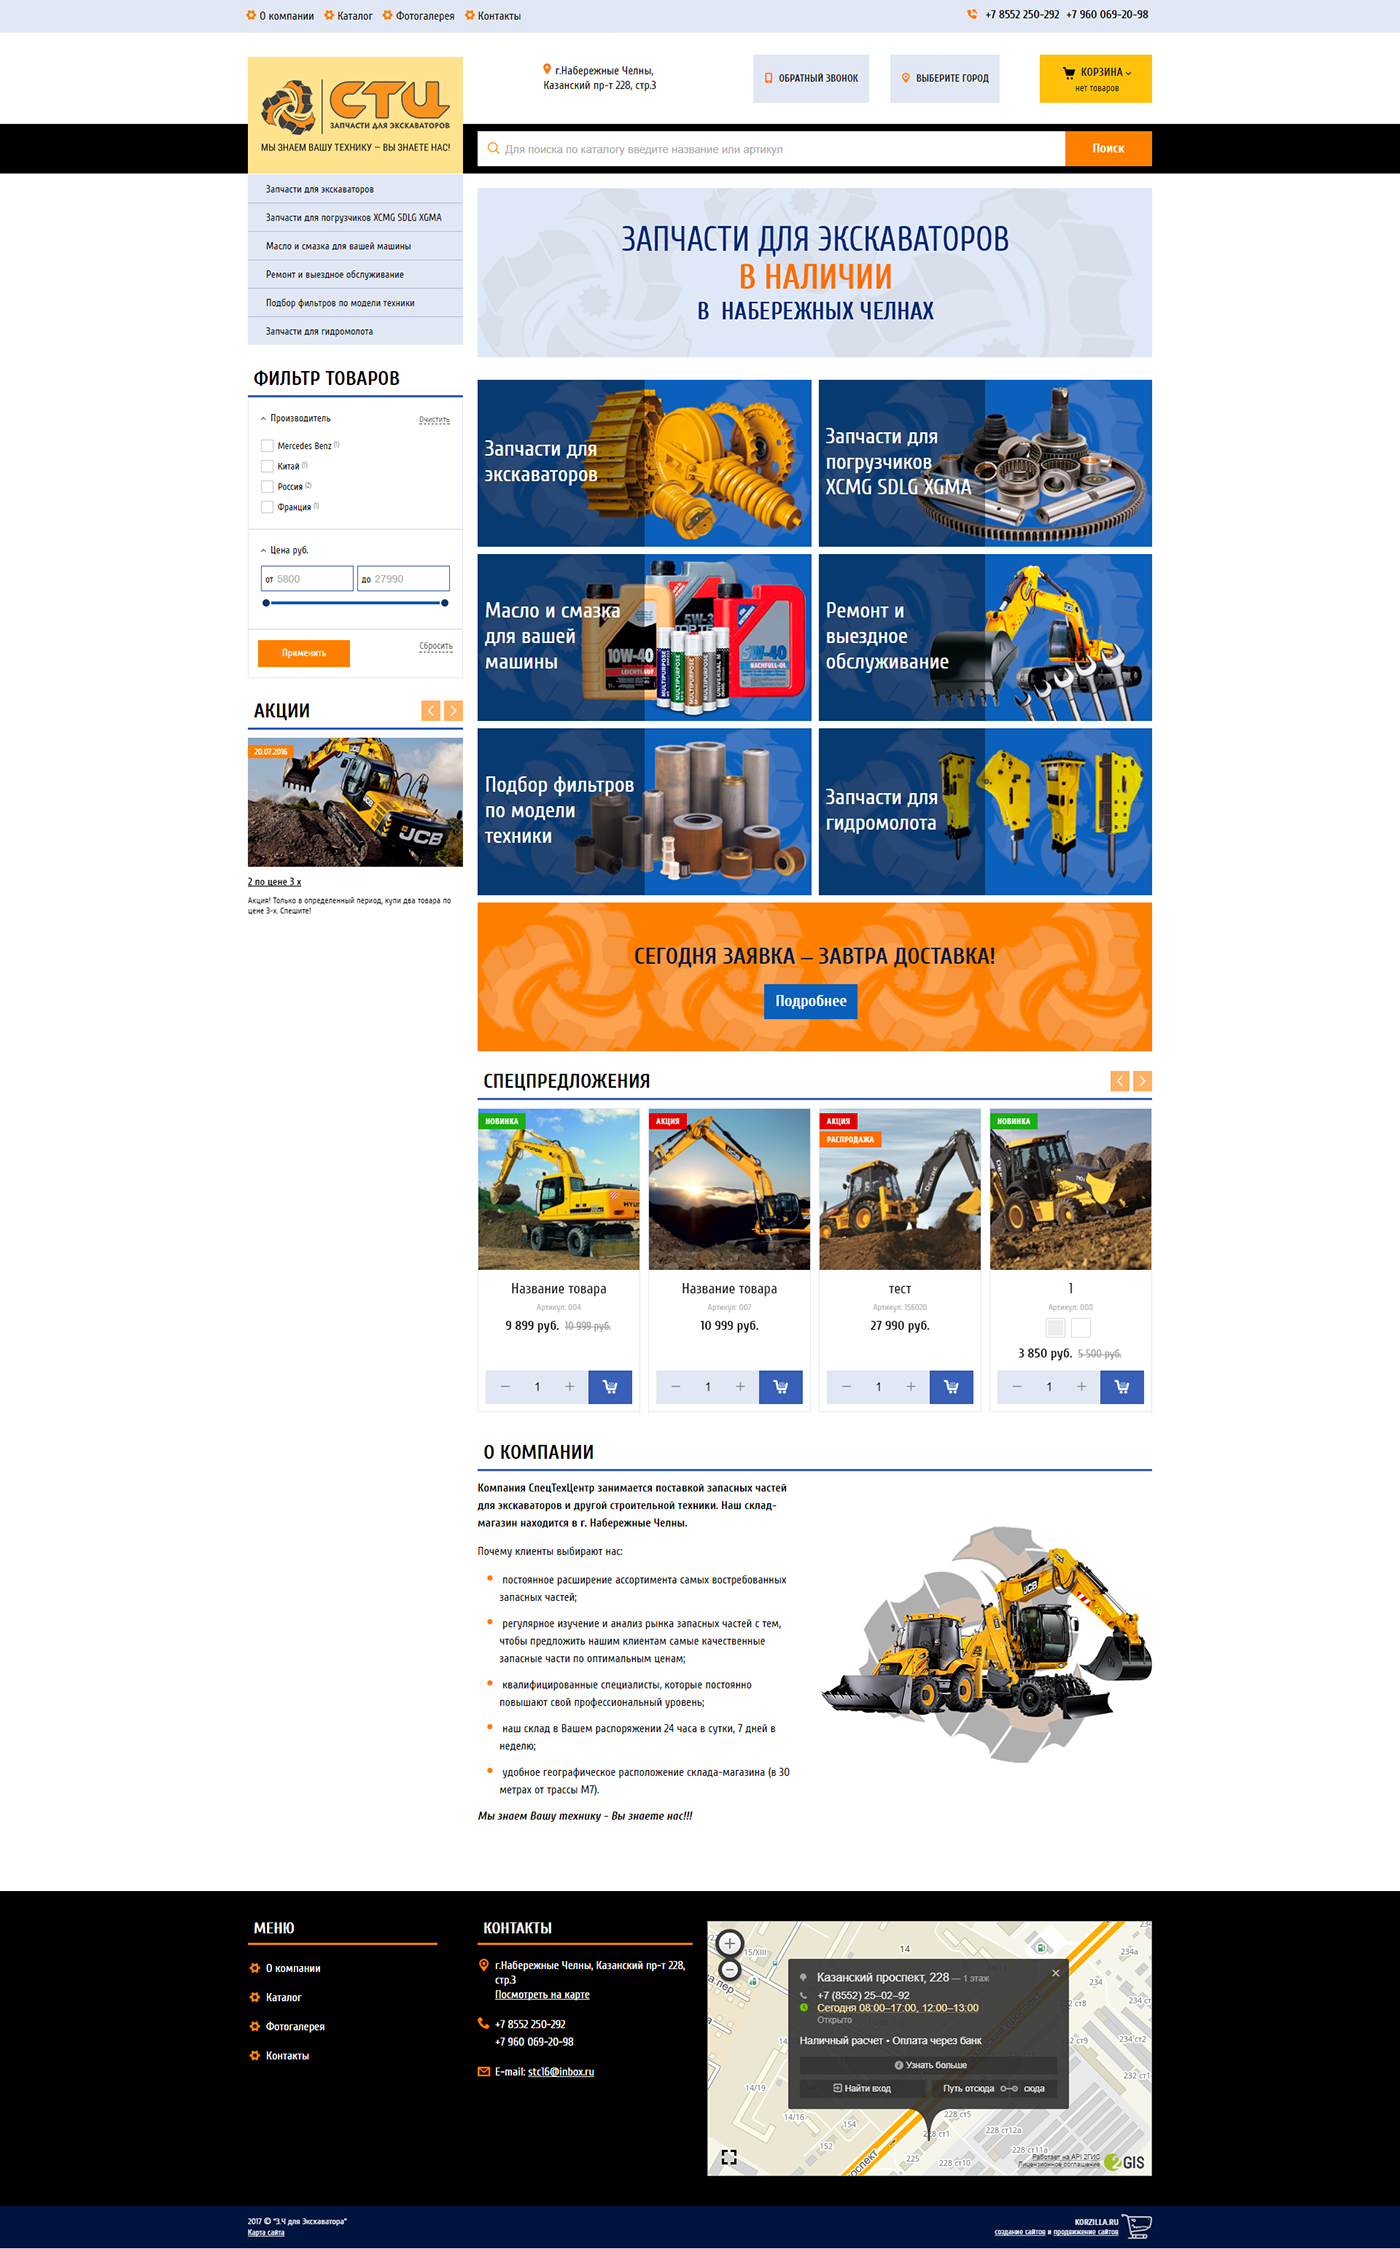 online store web-design UI spare parts Cars excavators business